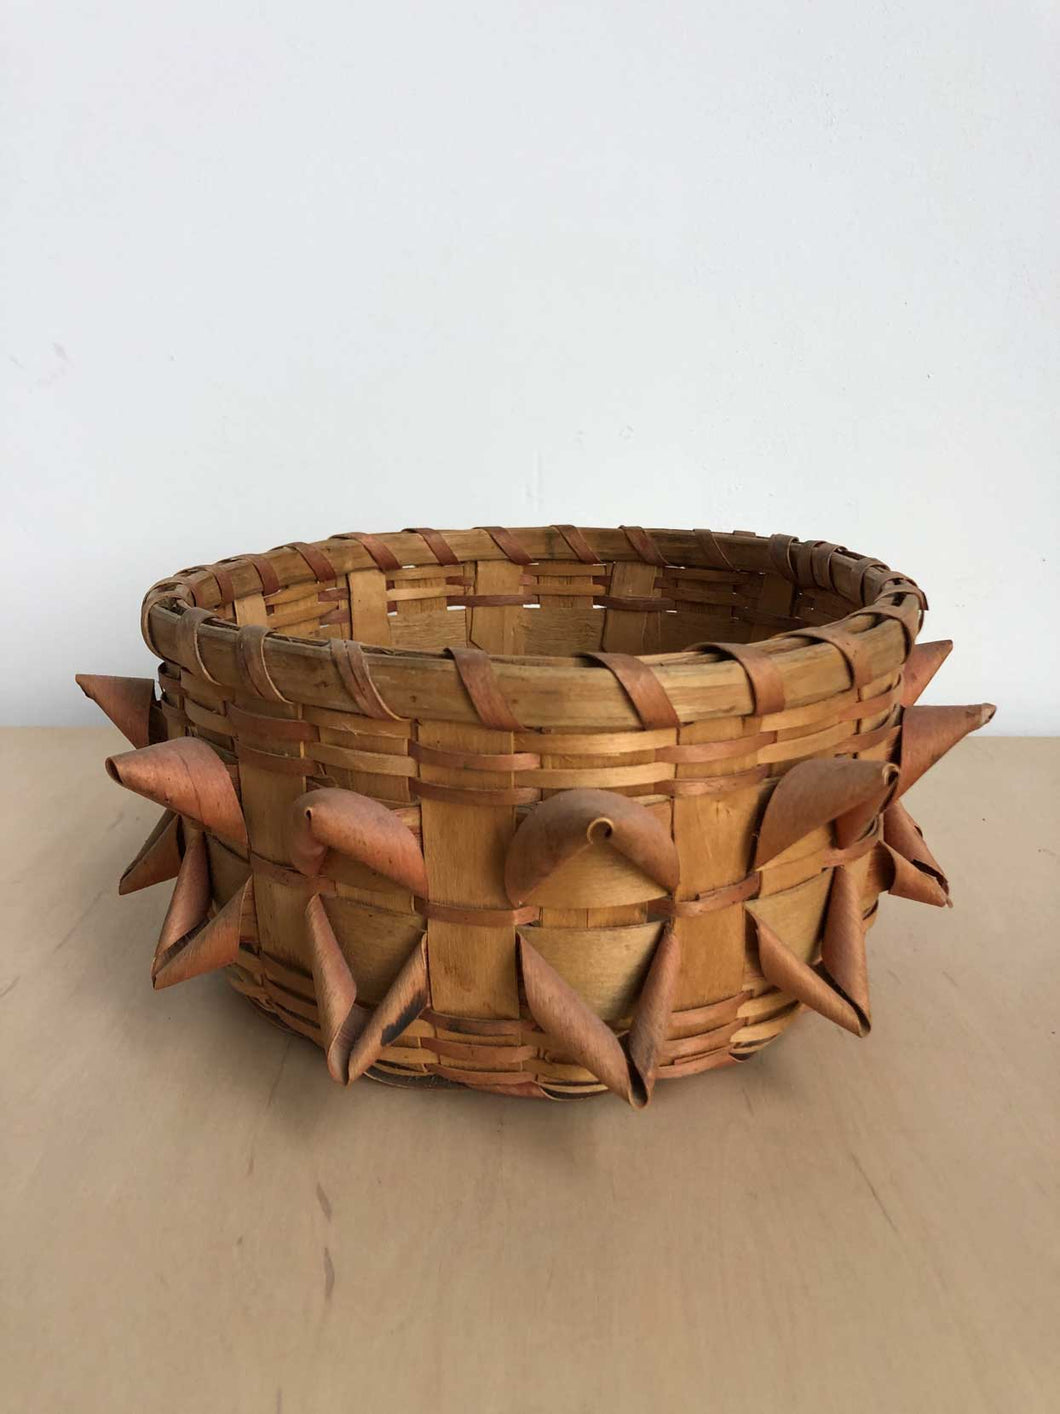 Vintage Curled Basket